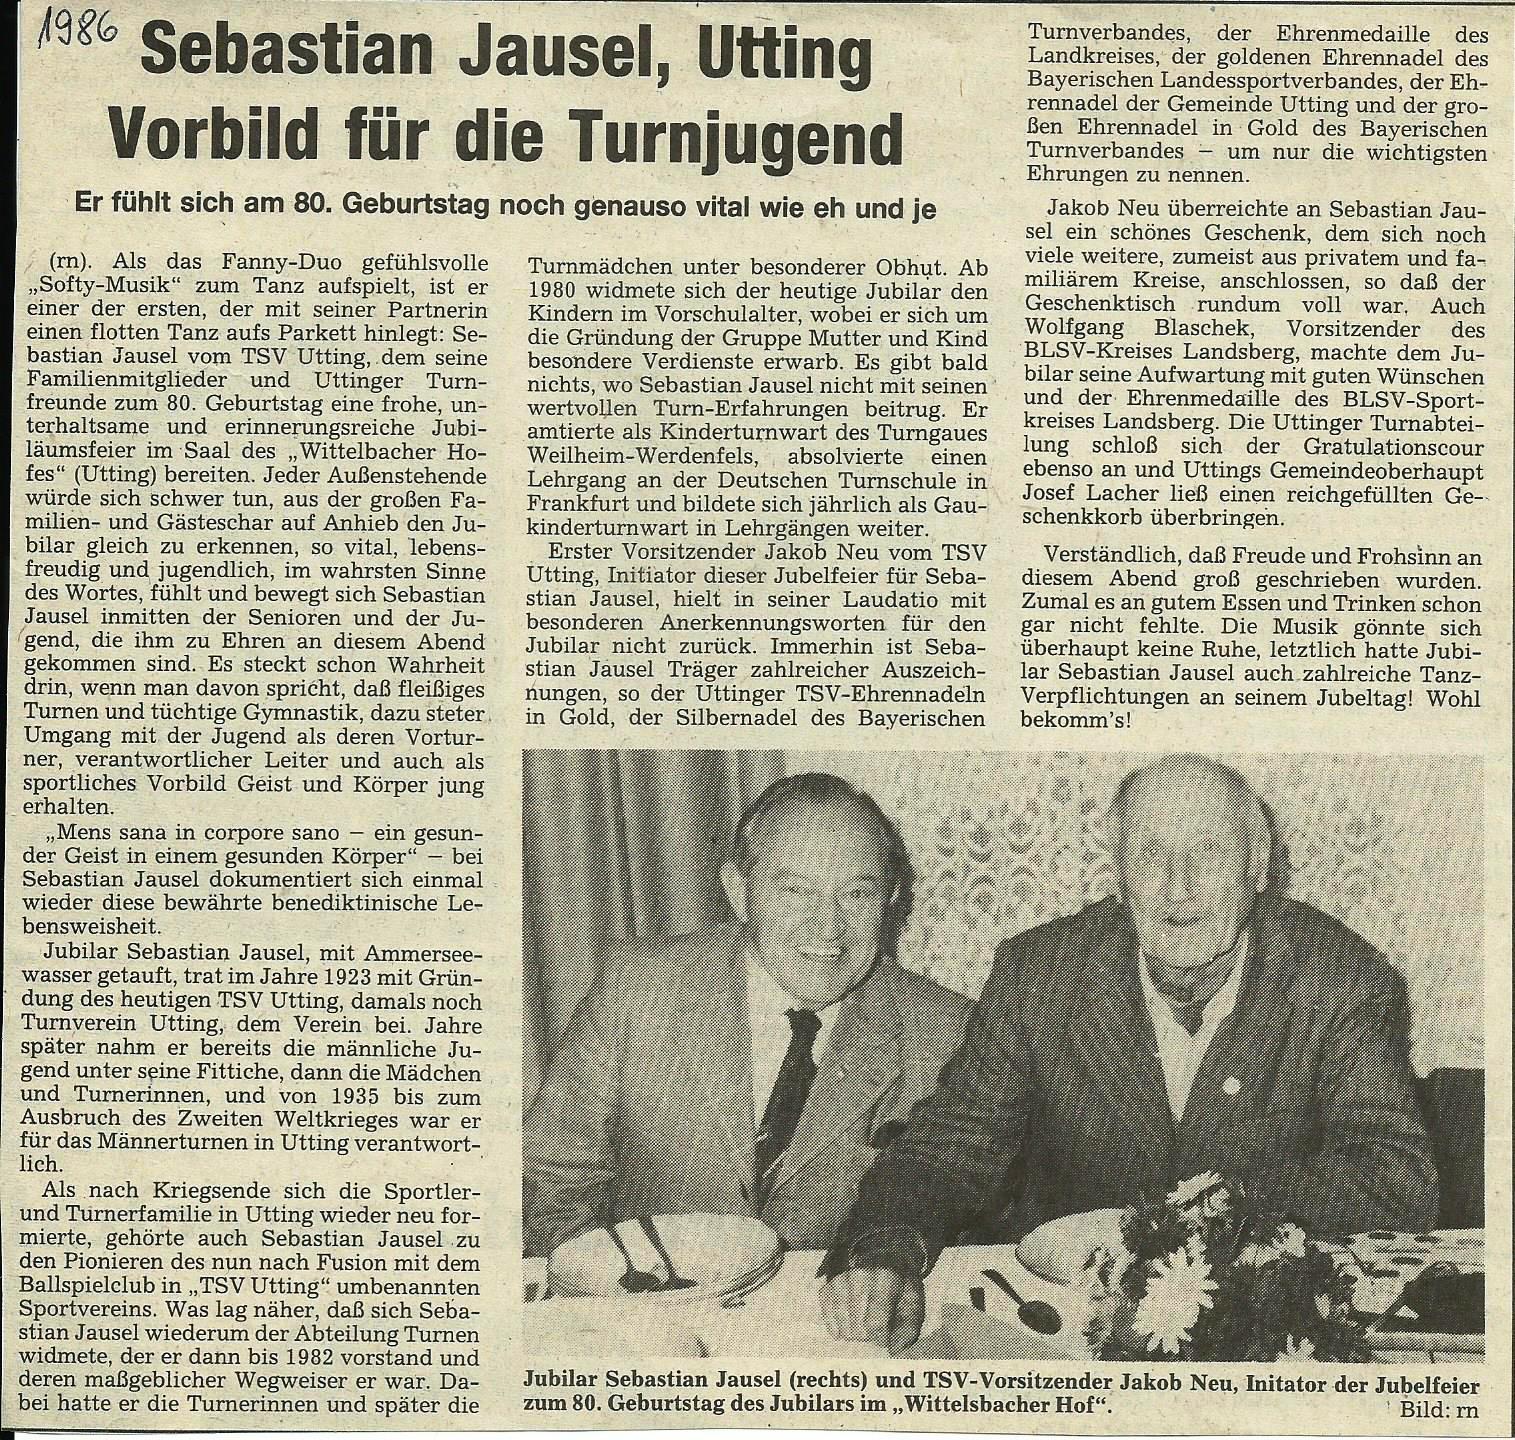 TSV Utting - 1986 Jausel Sebastian 80 Geburtstag